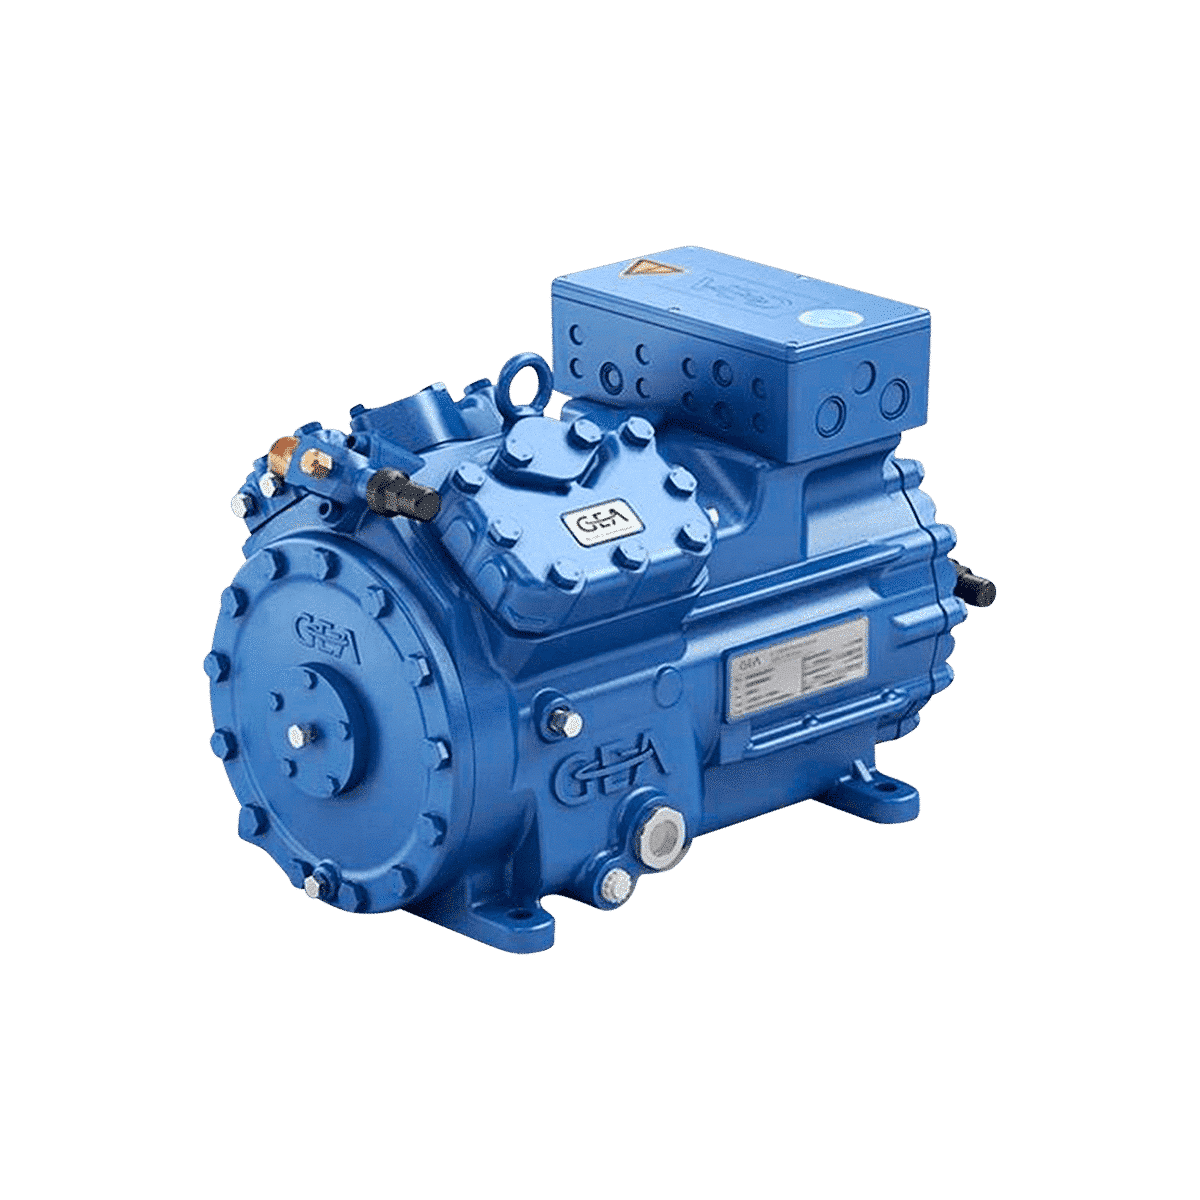 Compressore semiermetico alternativo Bock HGX34e/315-4 220-240V D/380-420V S-3-50HZ